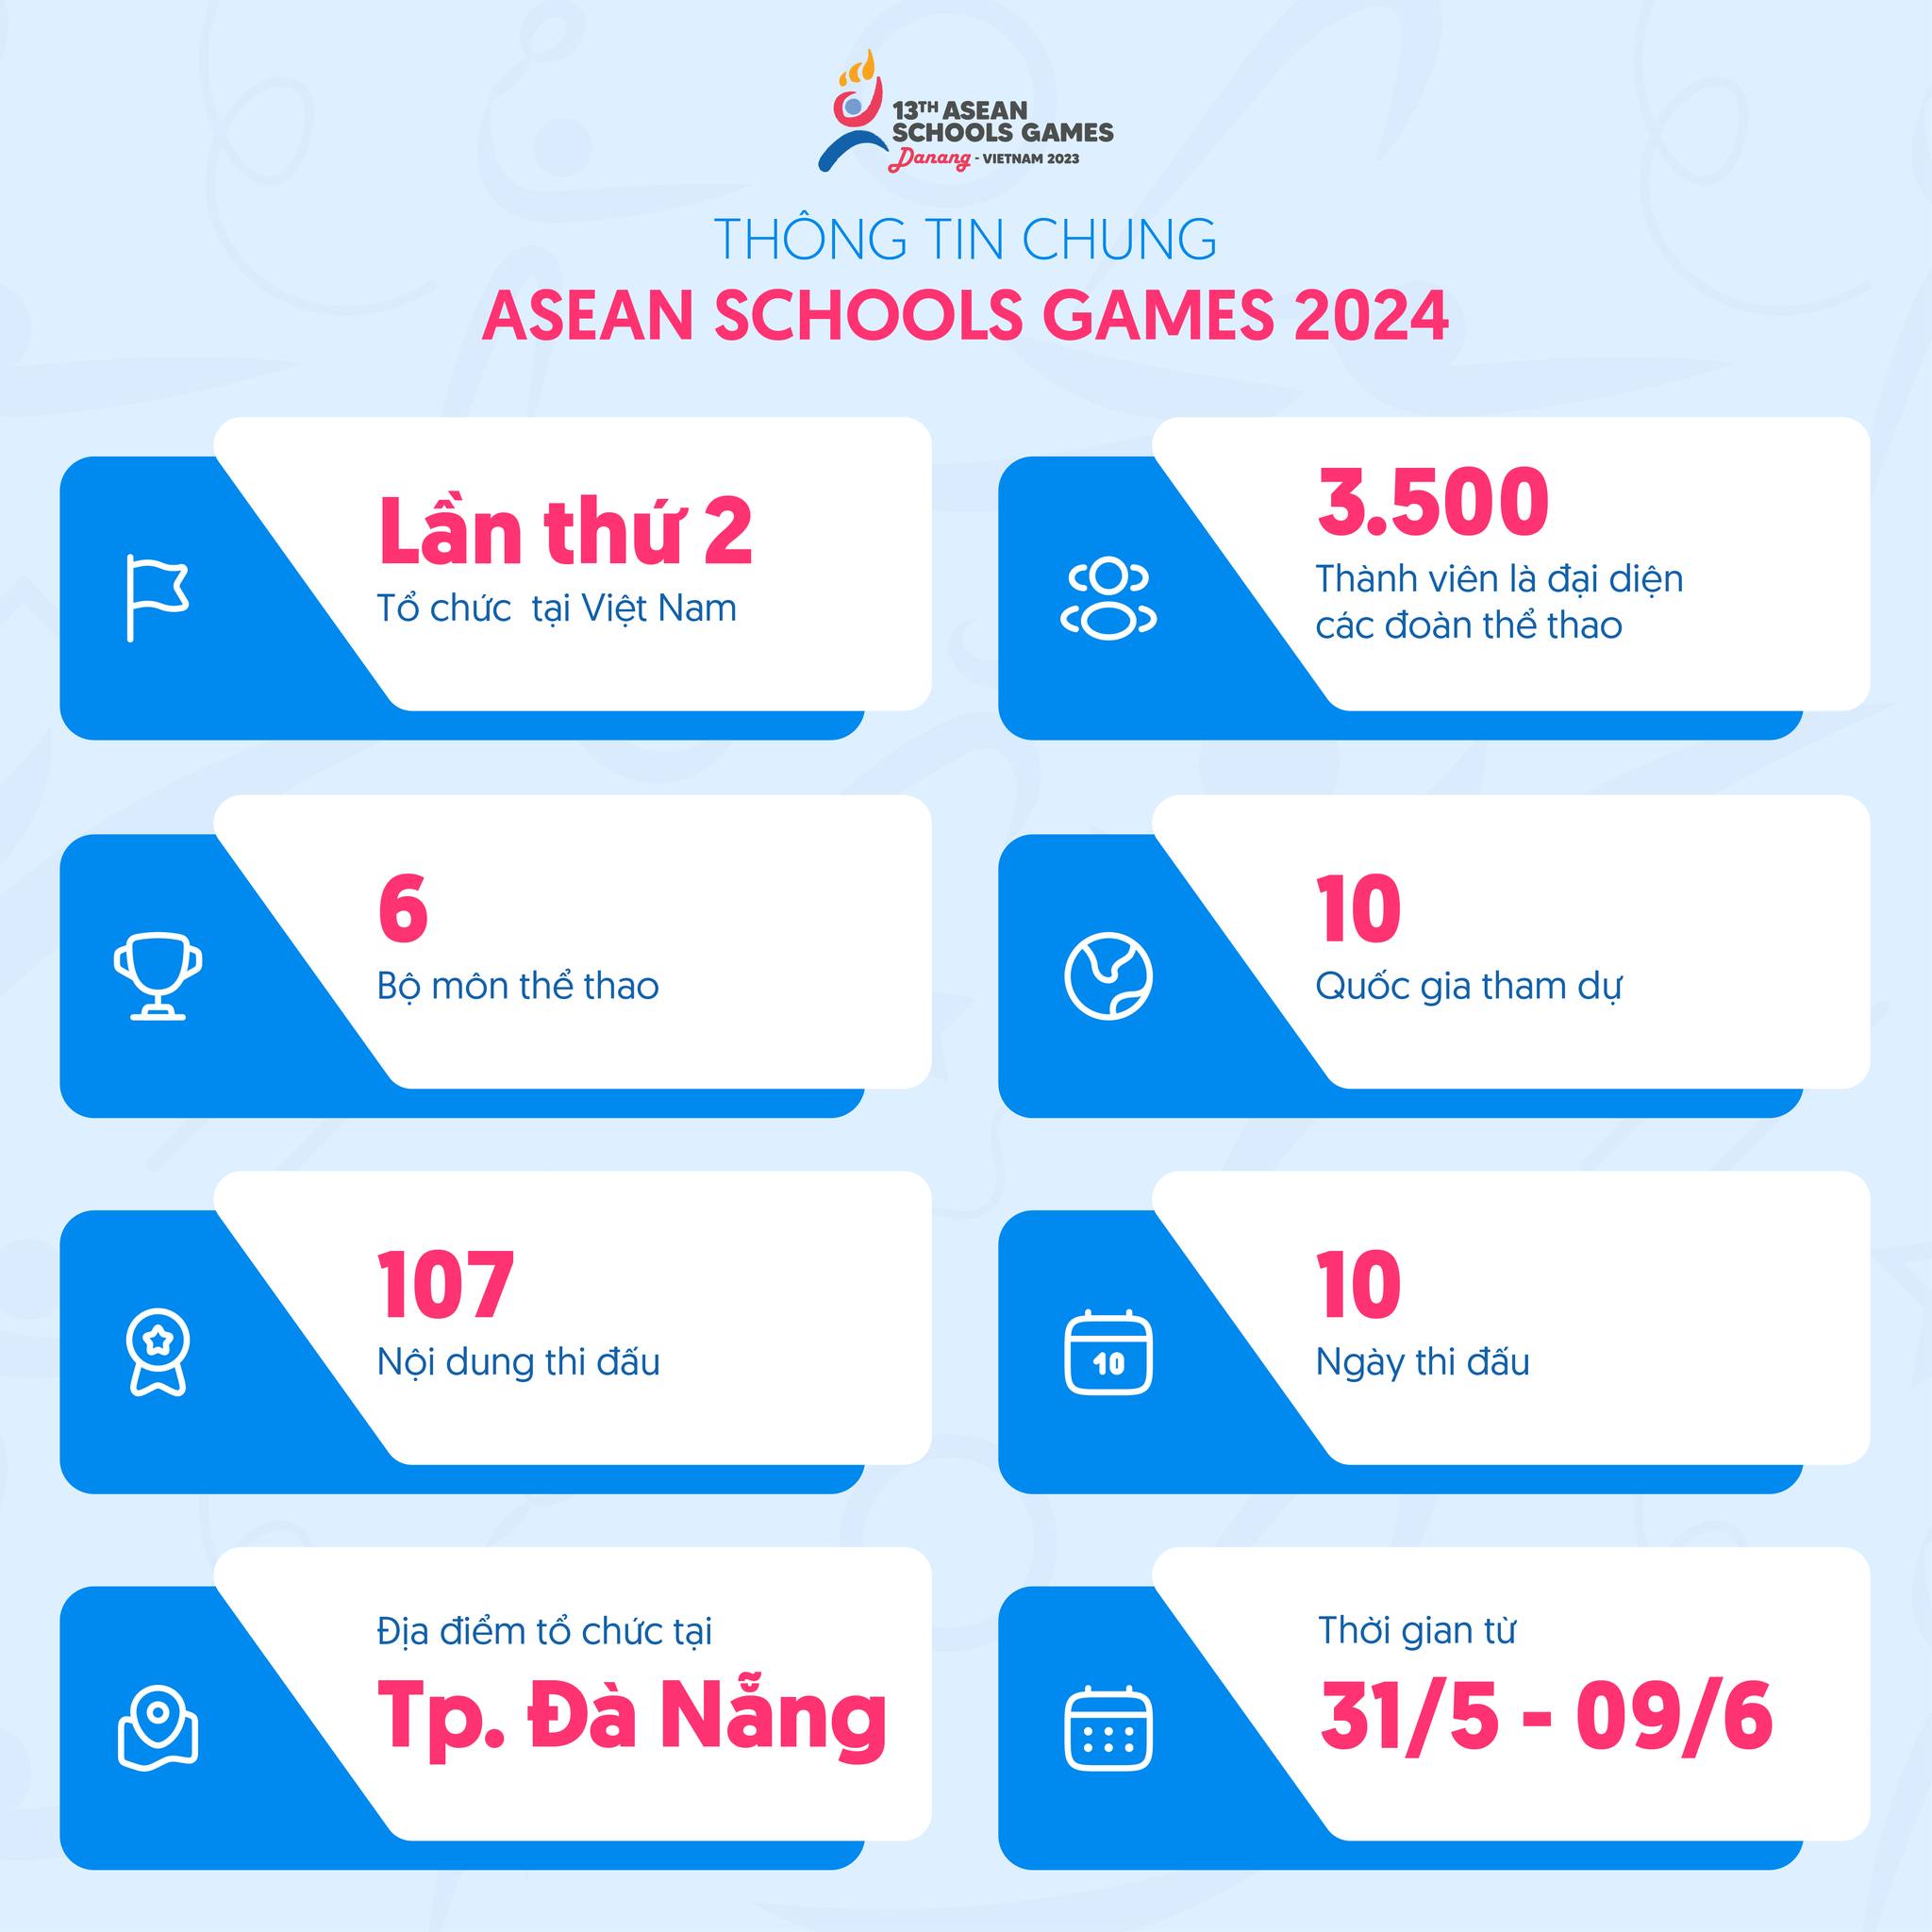 Đại hội thể thao học sinh Đông Nam Á ASEAN Schools Games 13: Kết nối cùng tỏa sáng - Ảnh 4.